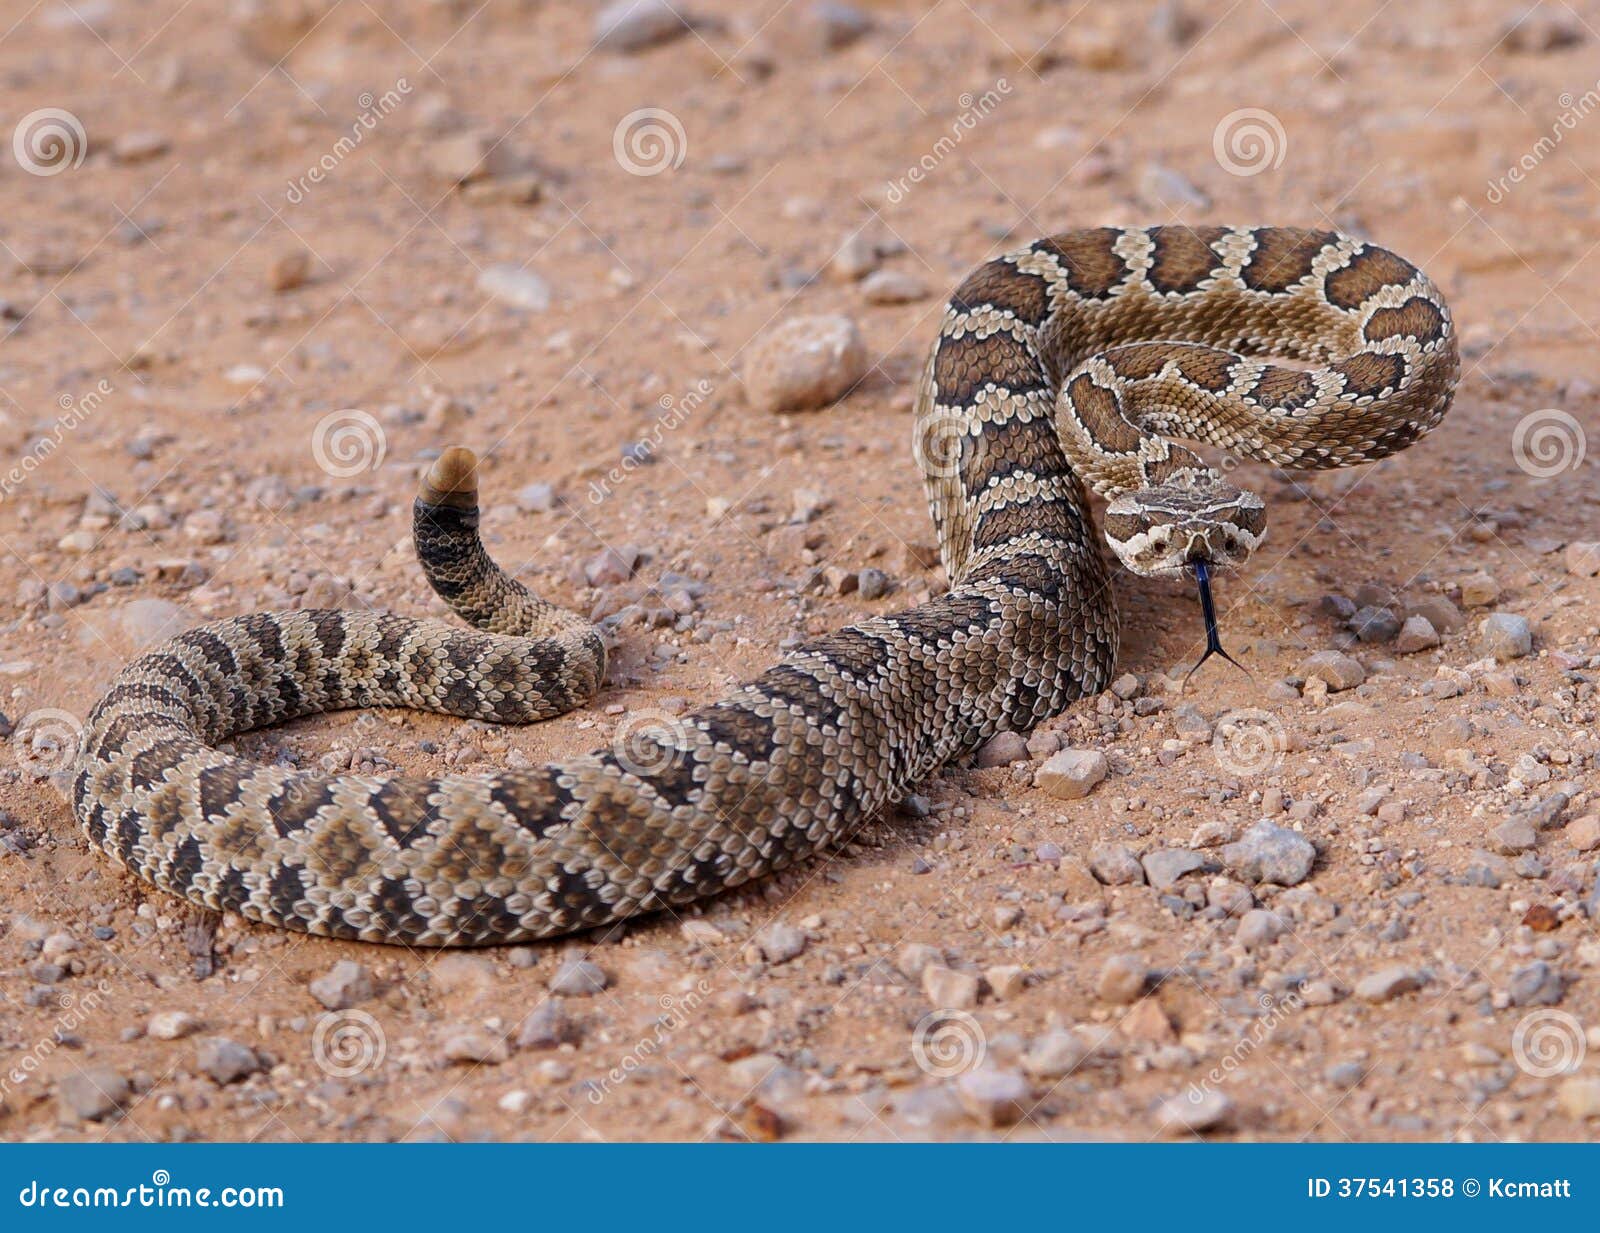 great basin rattlesnake, crotalus oreganus lutosus